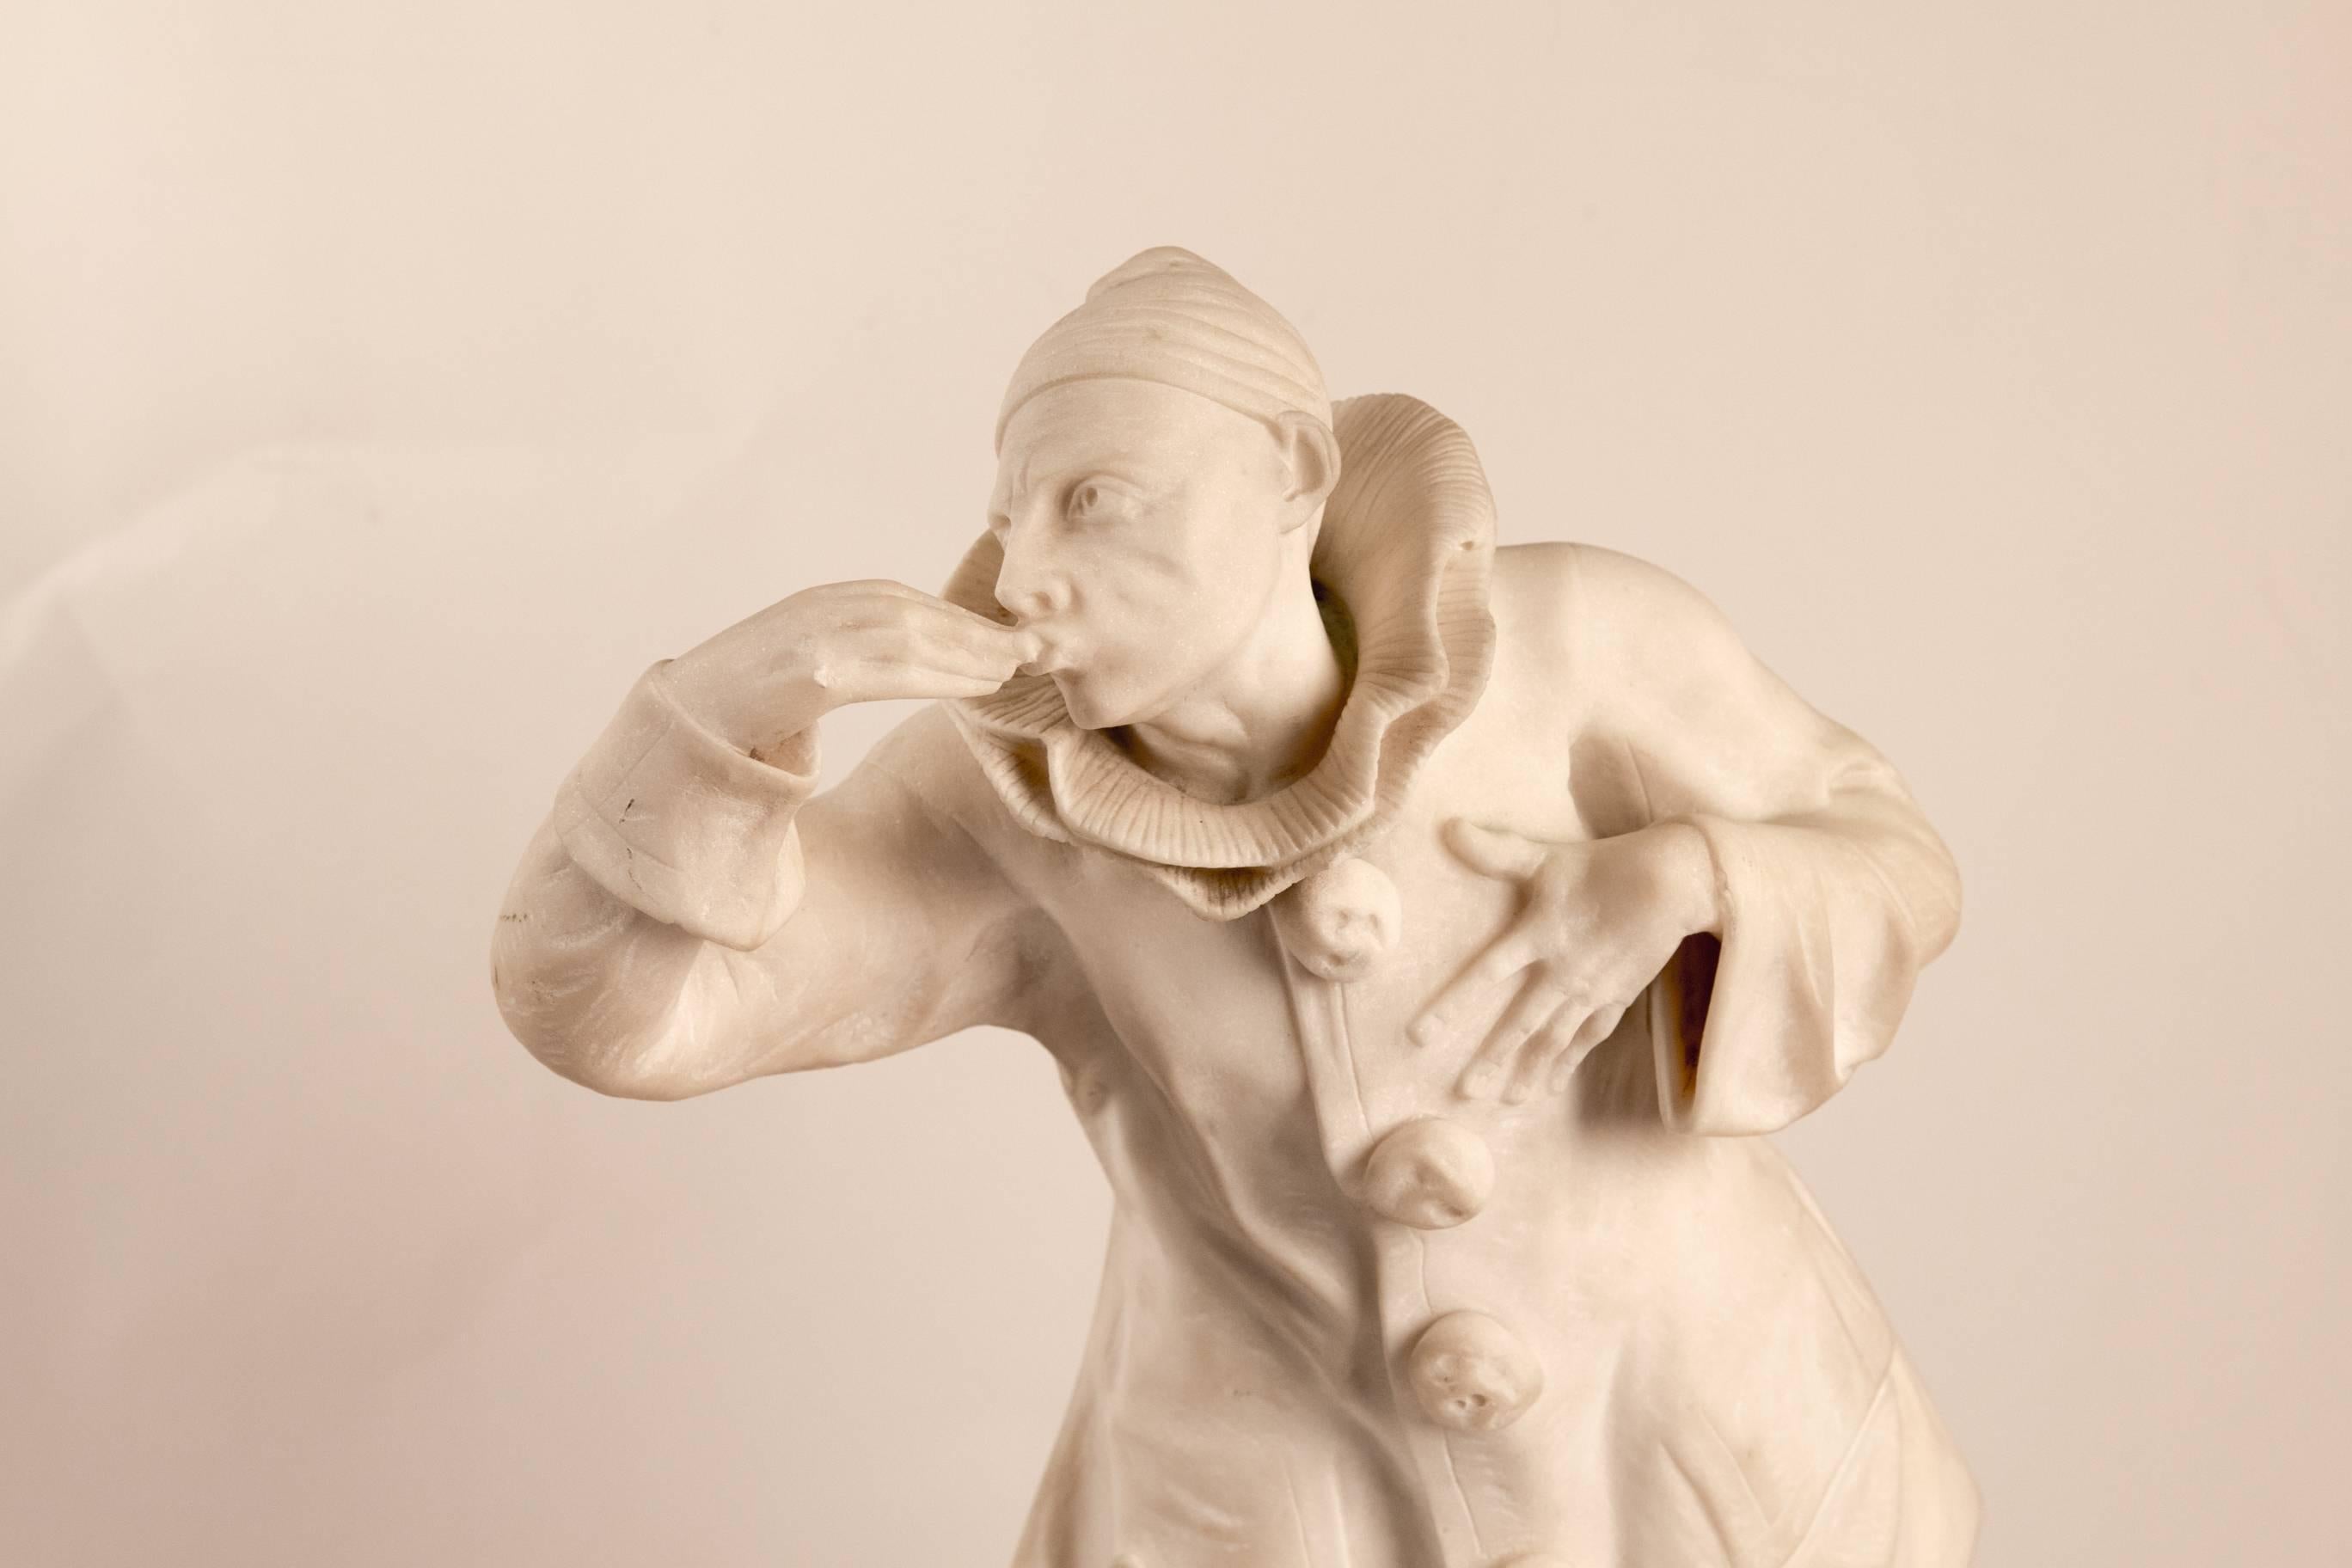 French Belgium Marble Pierrot Sculpture by John Mayne Van Der Kemp, circa 1910-1920